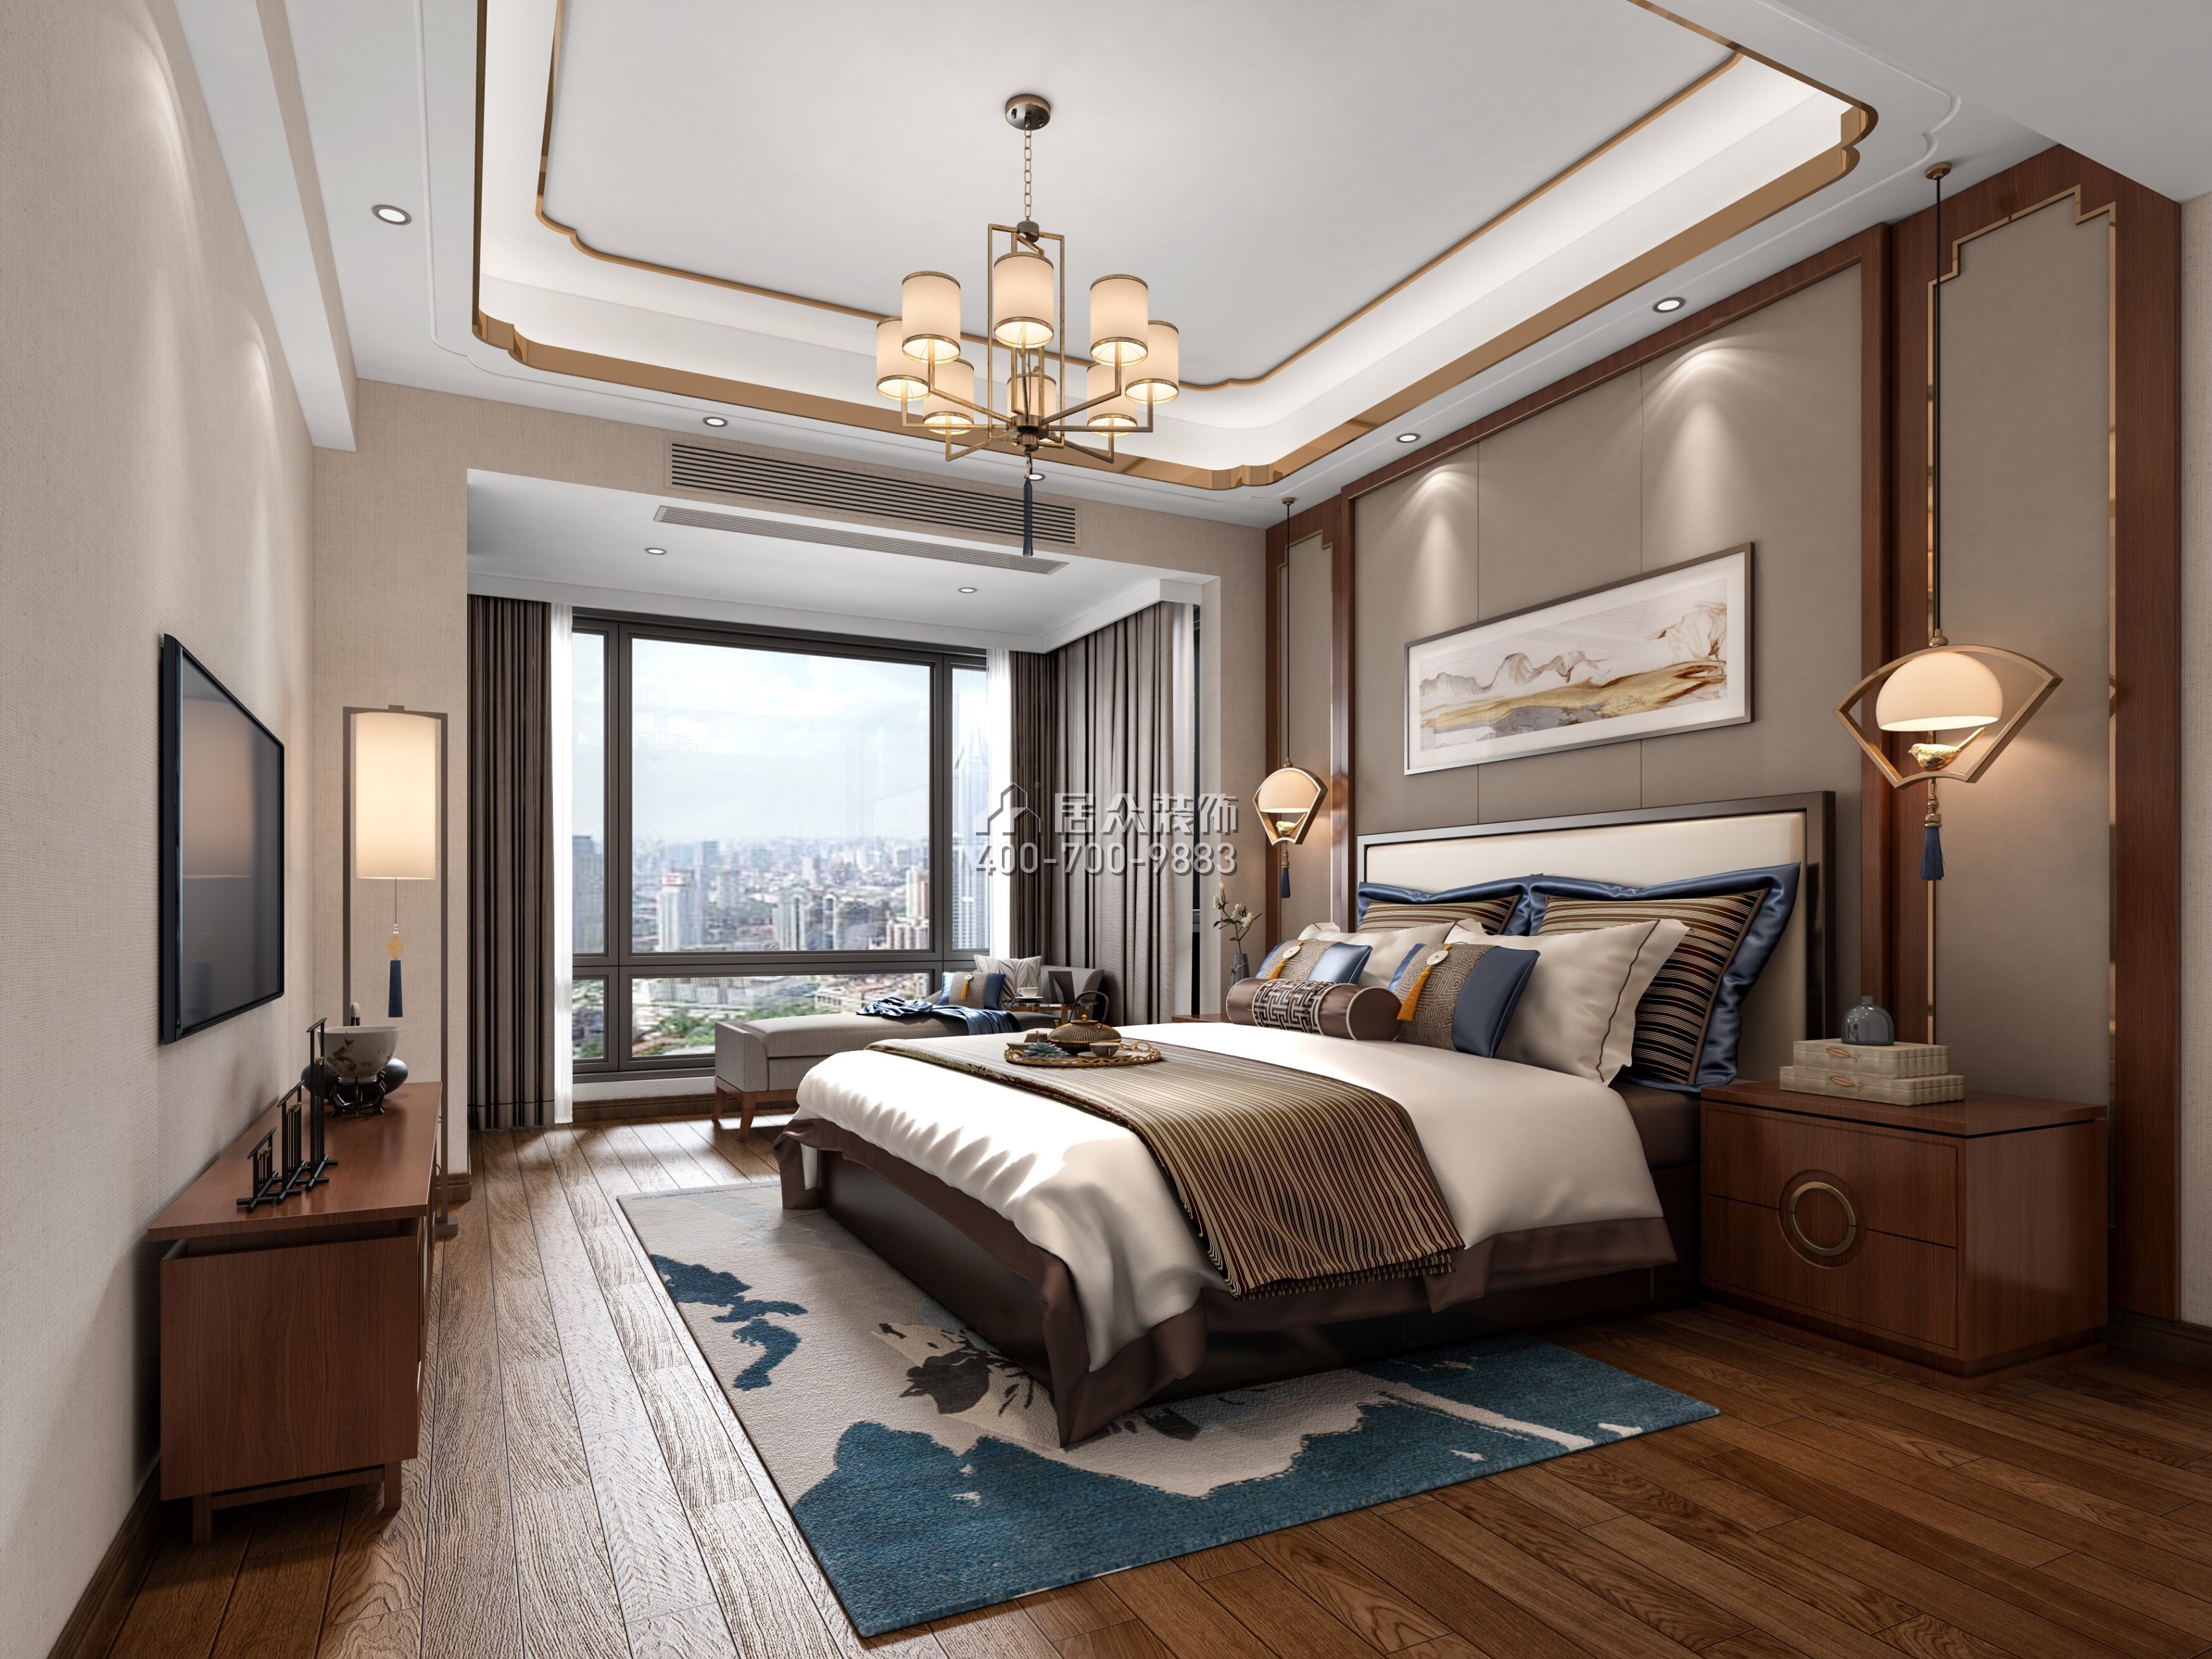 南头大厦260平方米中式风格复式户型卧室装修效果图